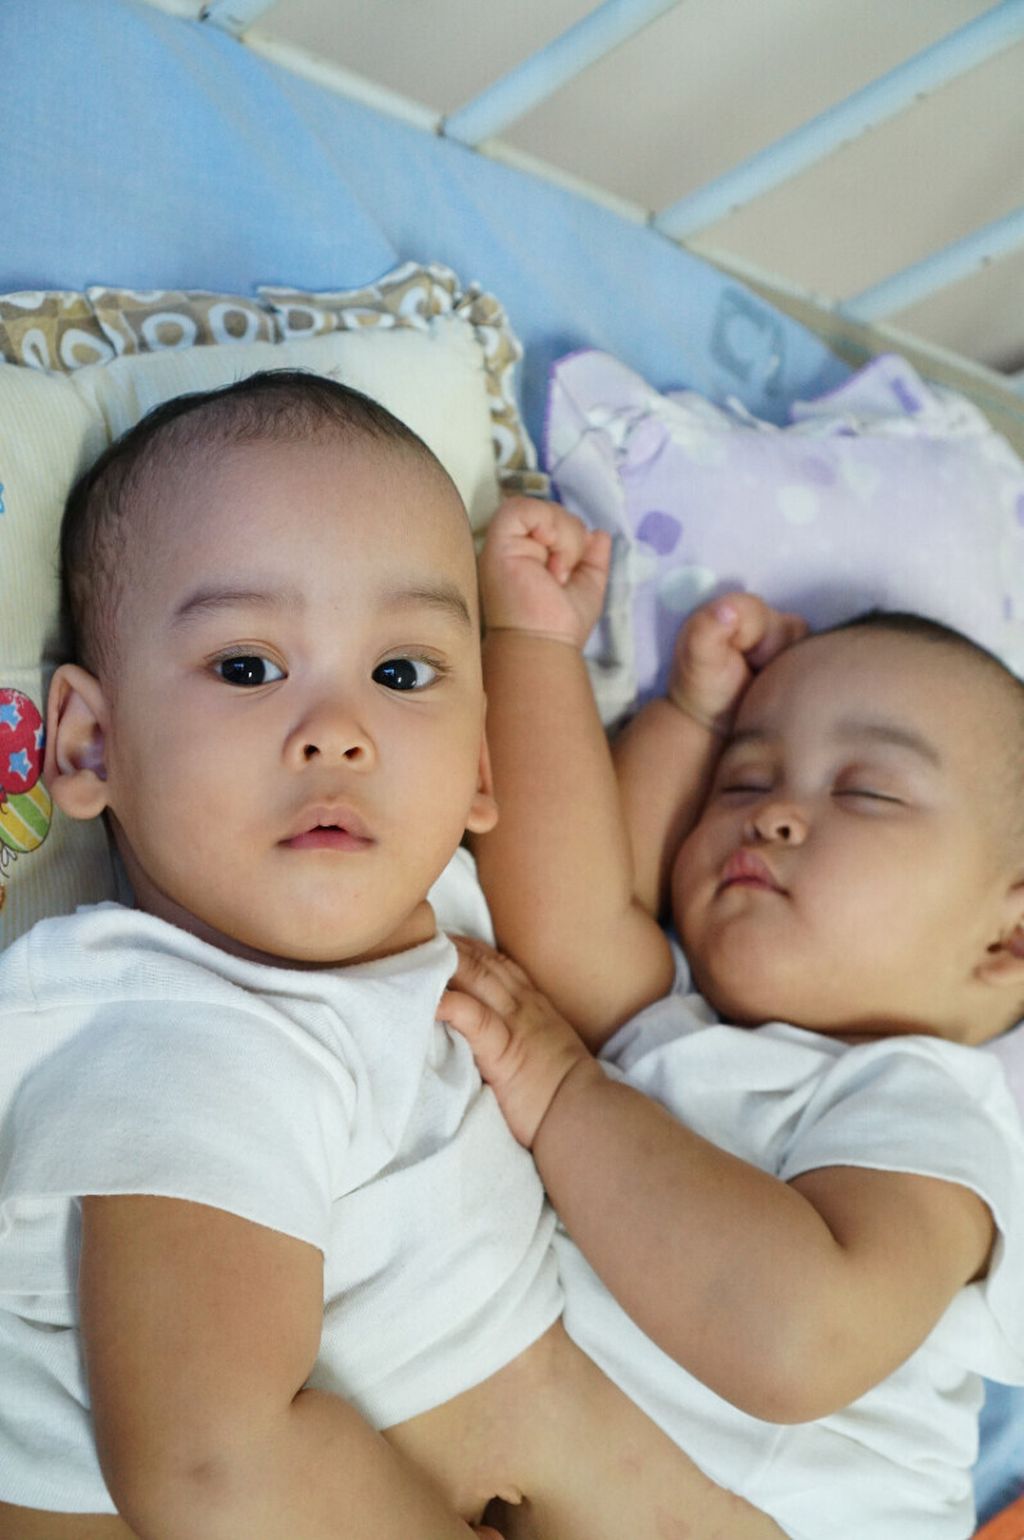 Bayi kembar siam Adam dan Malik dirawat di Rumah Sakit Umum Pusat H Adam Malik, Medan, Sumatera Utara, Senin (15/7/2019).